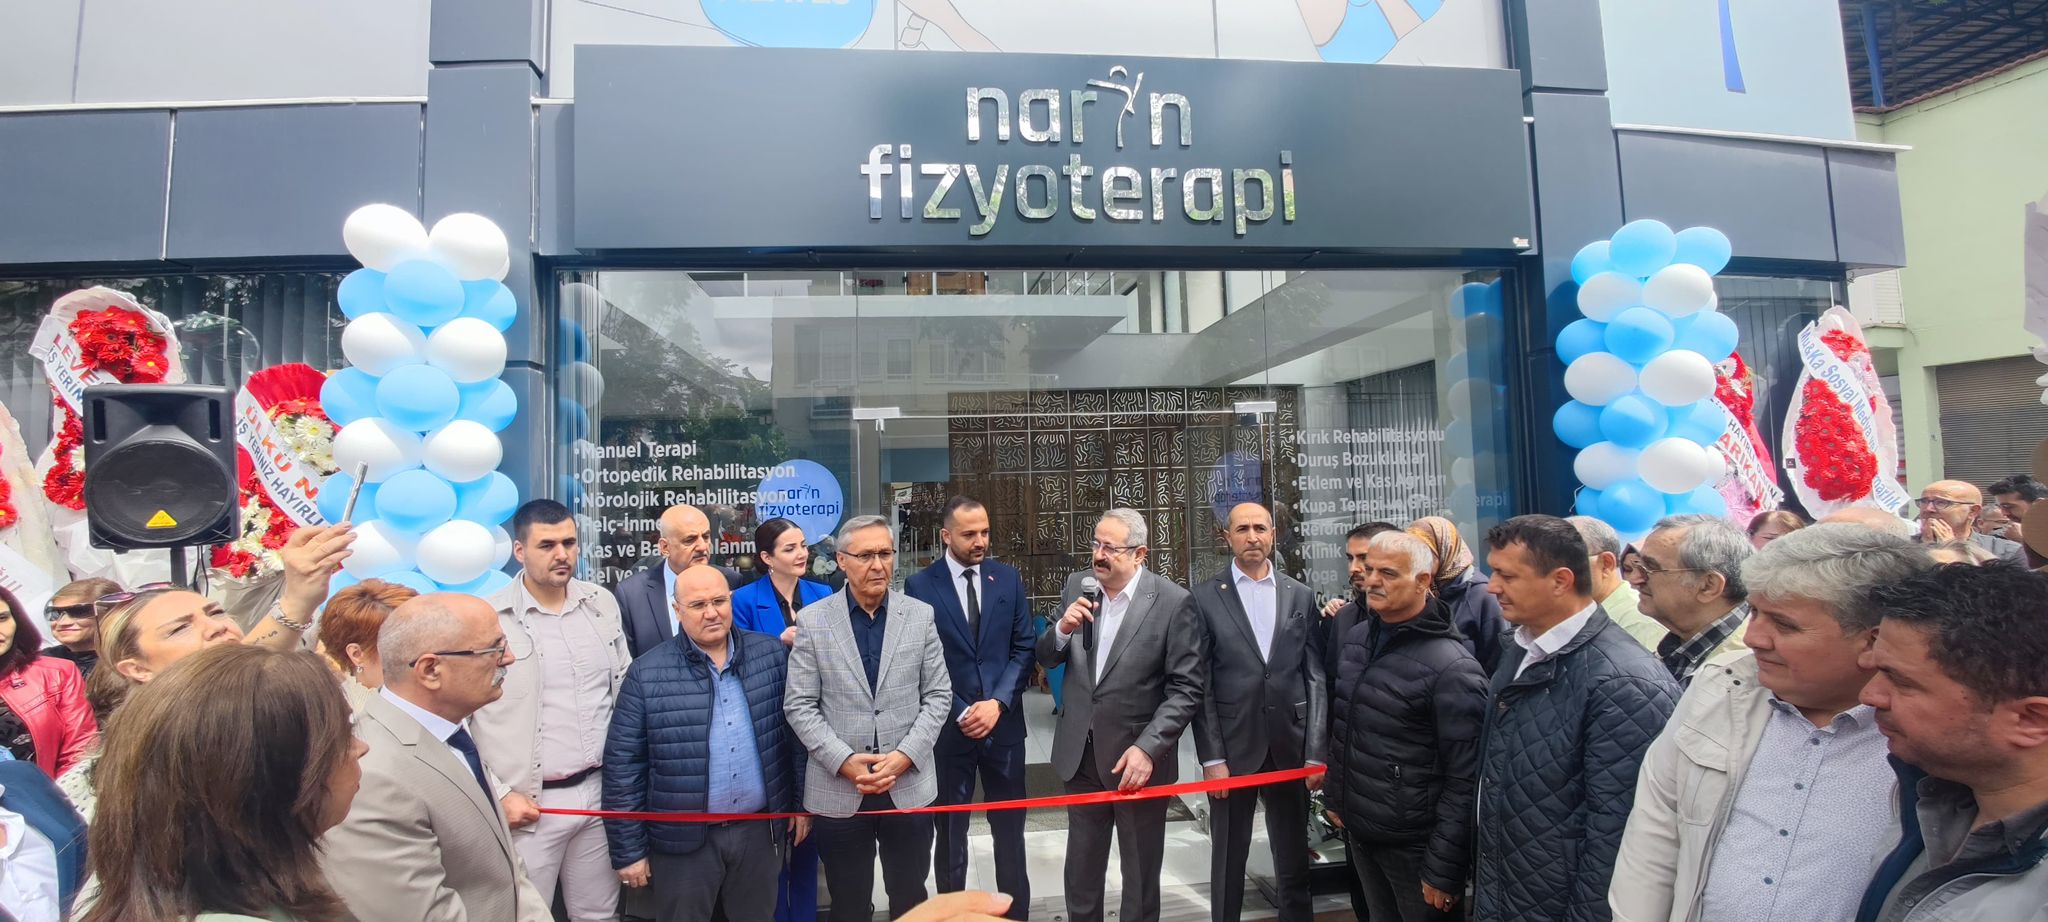 Kaymakam Sağlam, Narin Fizyoterapi Merkezi'nin açılışında yerini aldı.